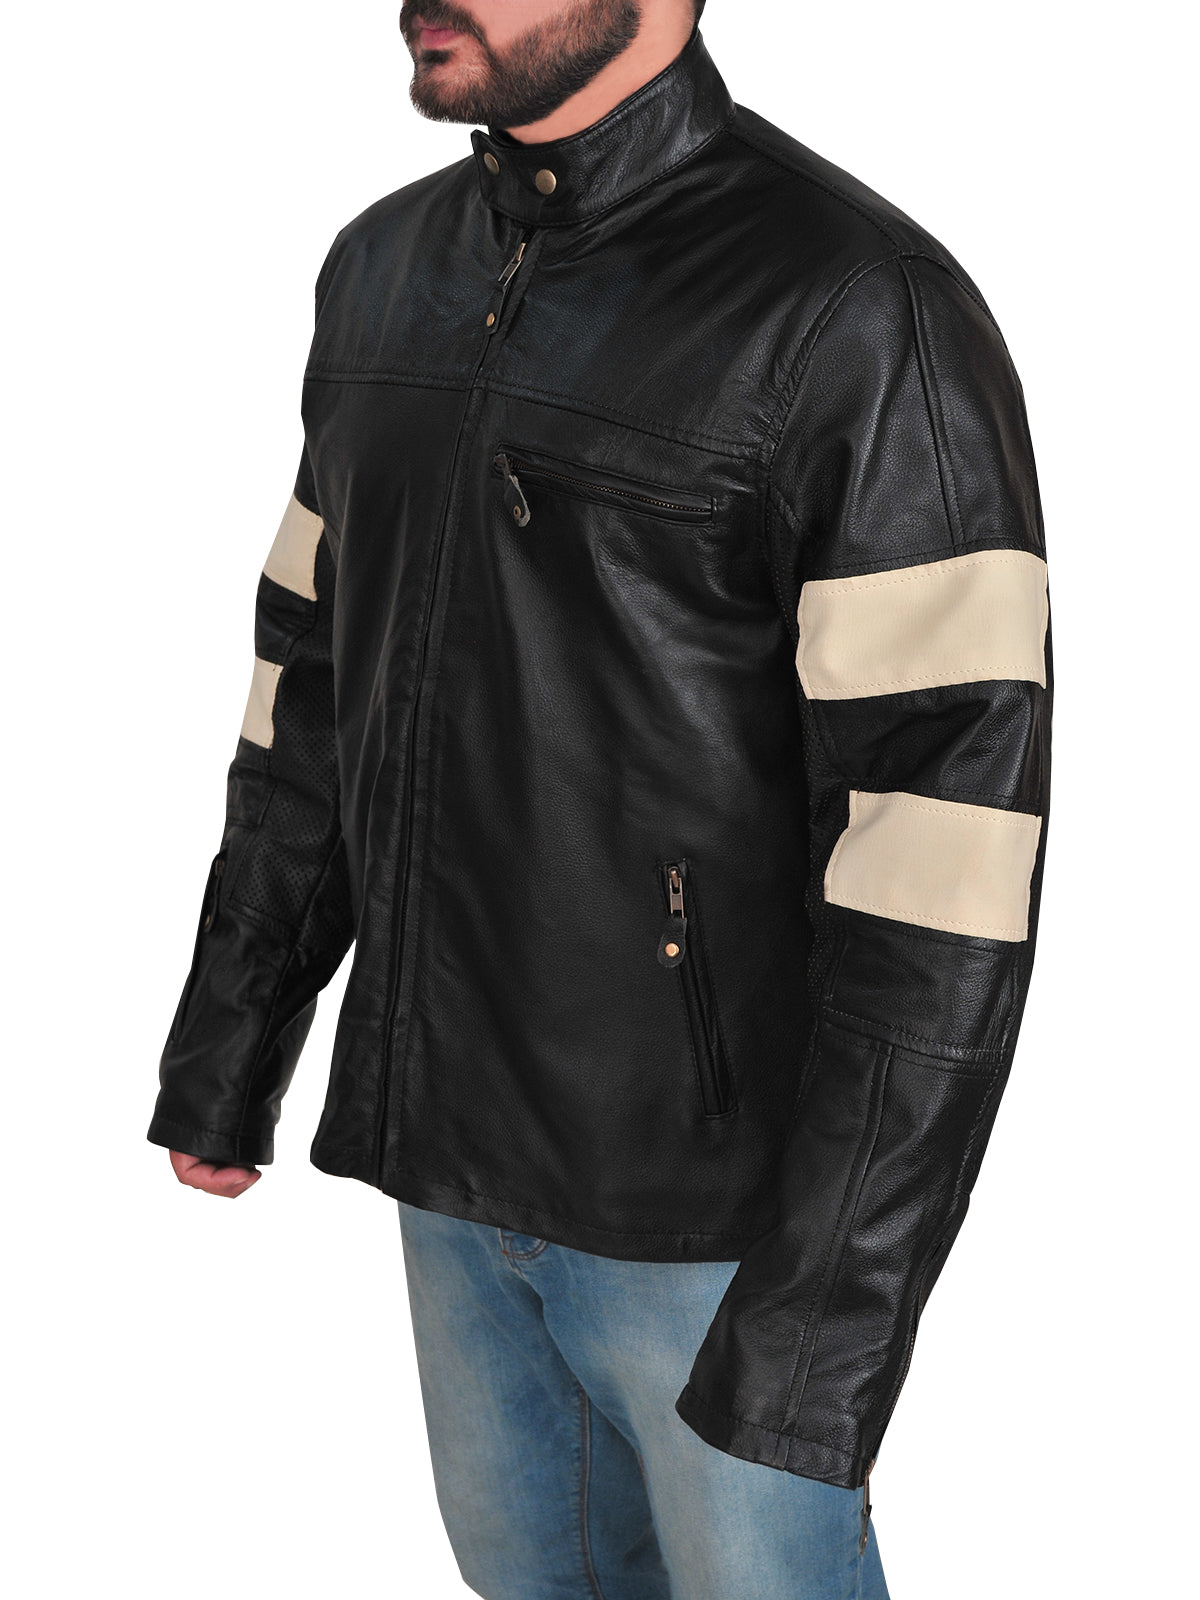 Keanu Reeves KRGT-1 Biker Leather Jacket